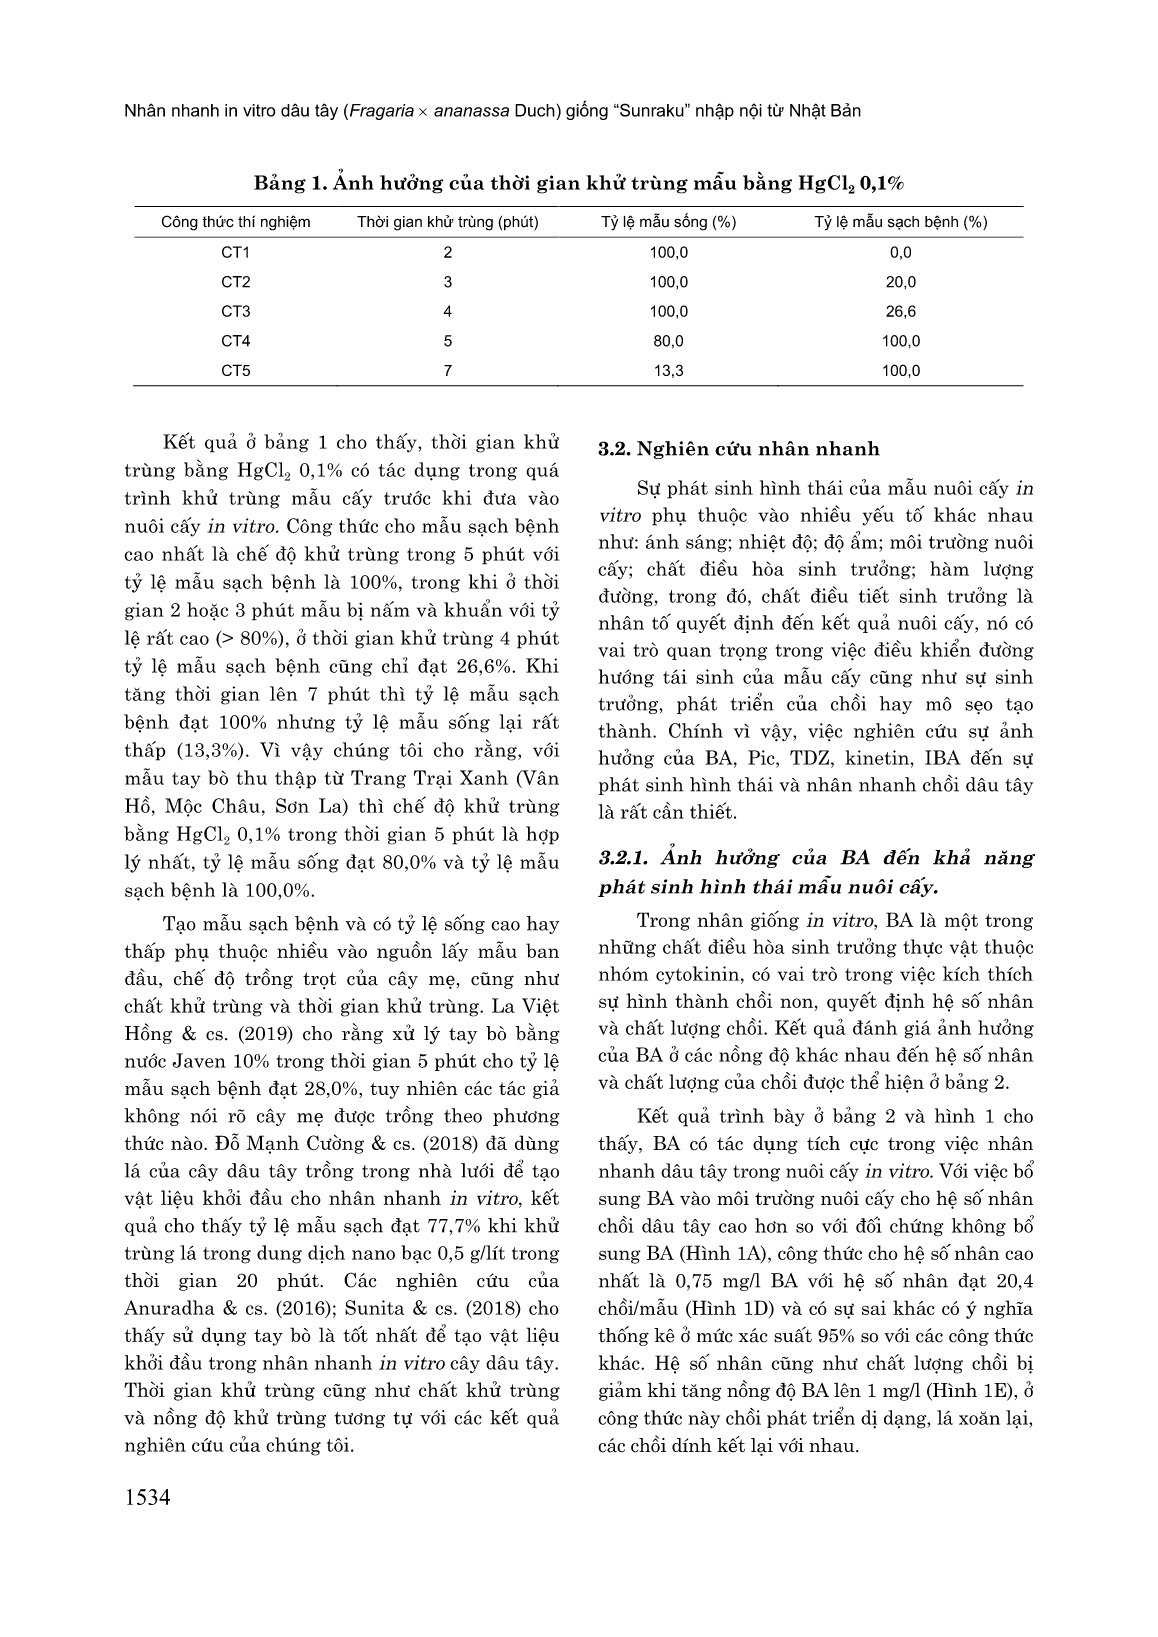 Nhân nhanh in vitro dâu tây (Fragaria x Ananassa Duch) giống “Sunraku” nhập nội từ Nhật Bản trang 4